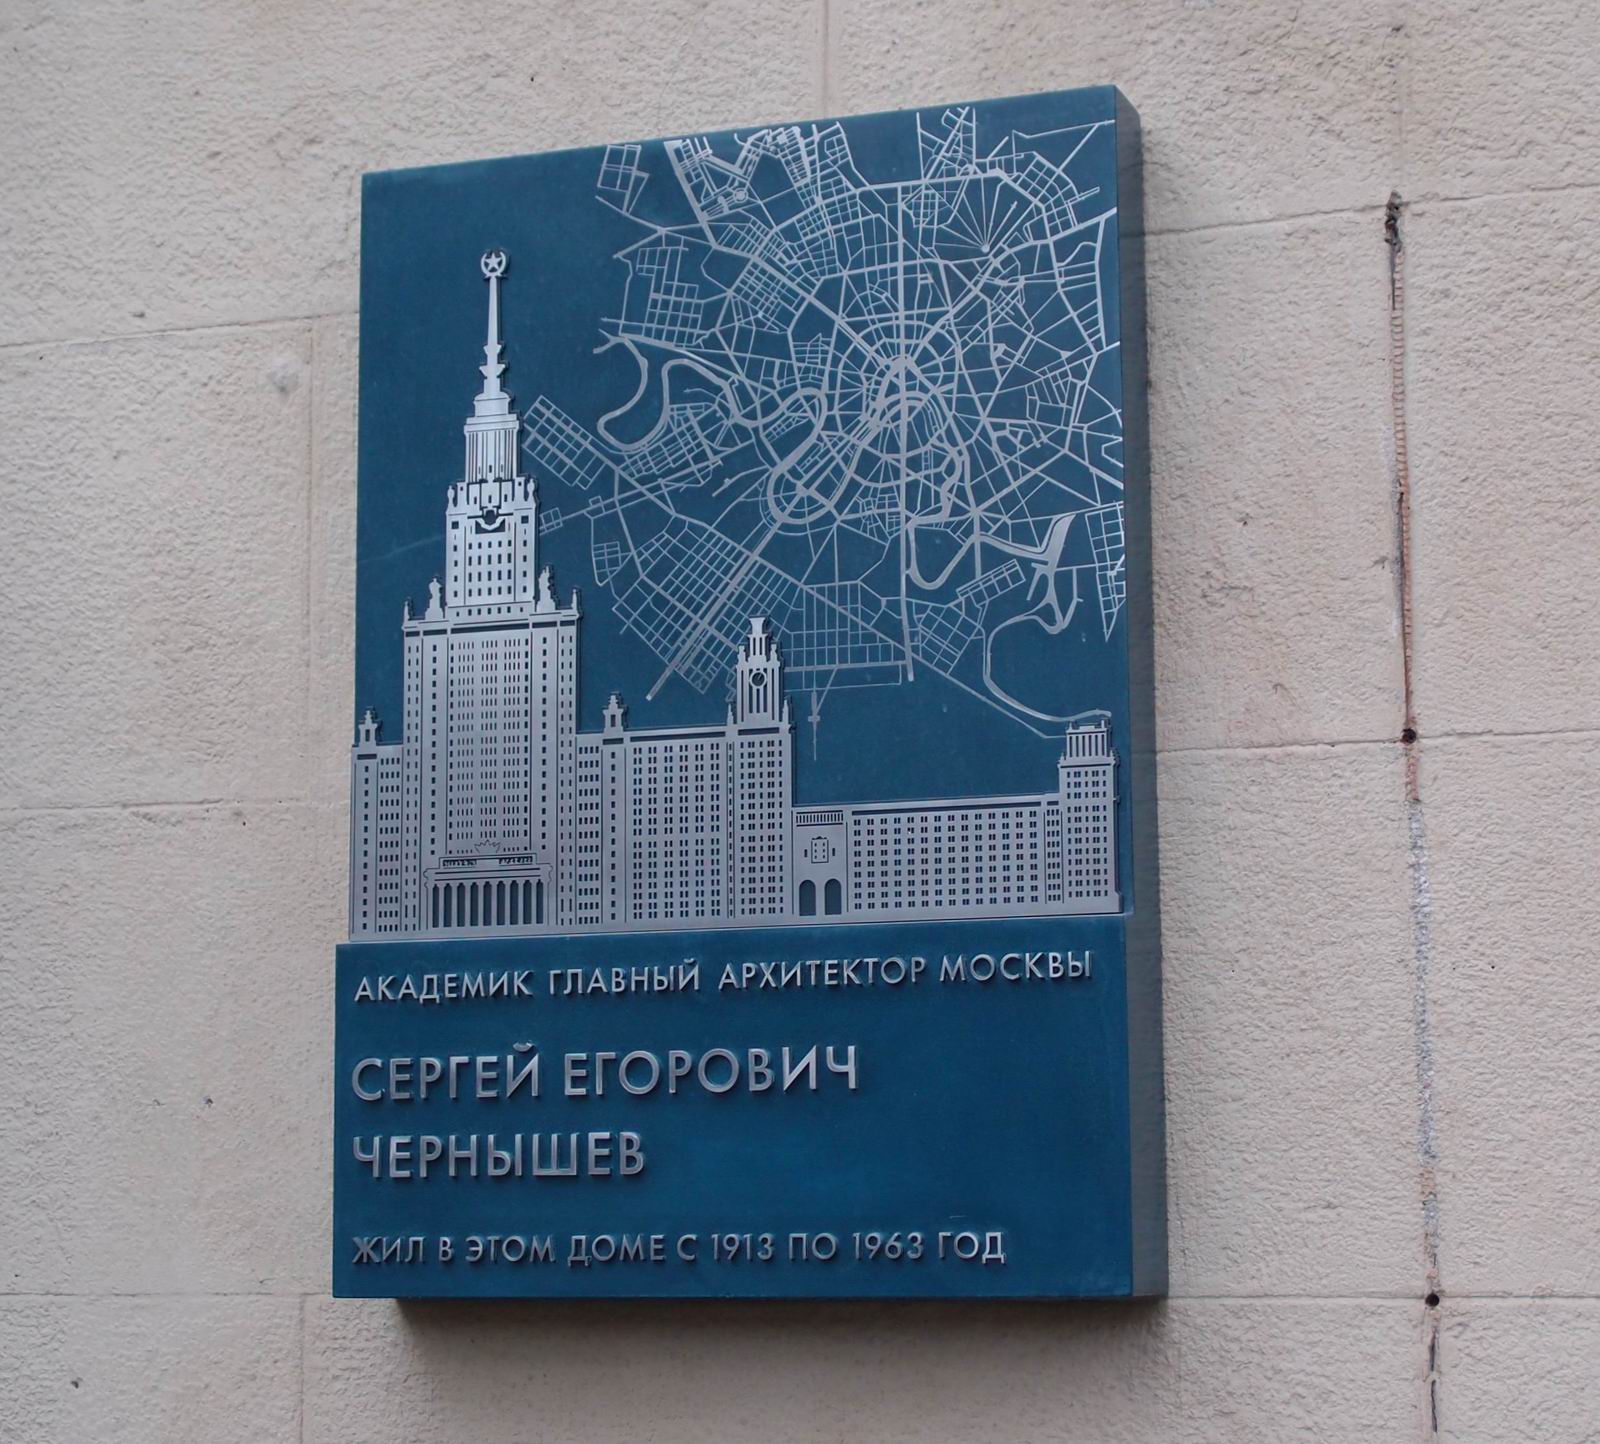 Мемориальная доска Чернышёву С.Е. (1881–1963), ск. П.Гнездилова, на улице Бурденко, дом 14, открыта 25.4.2018.